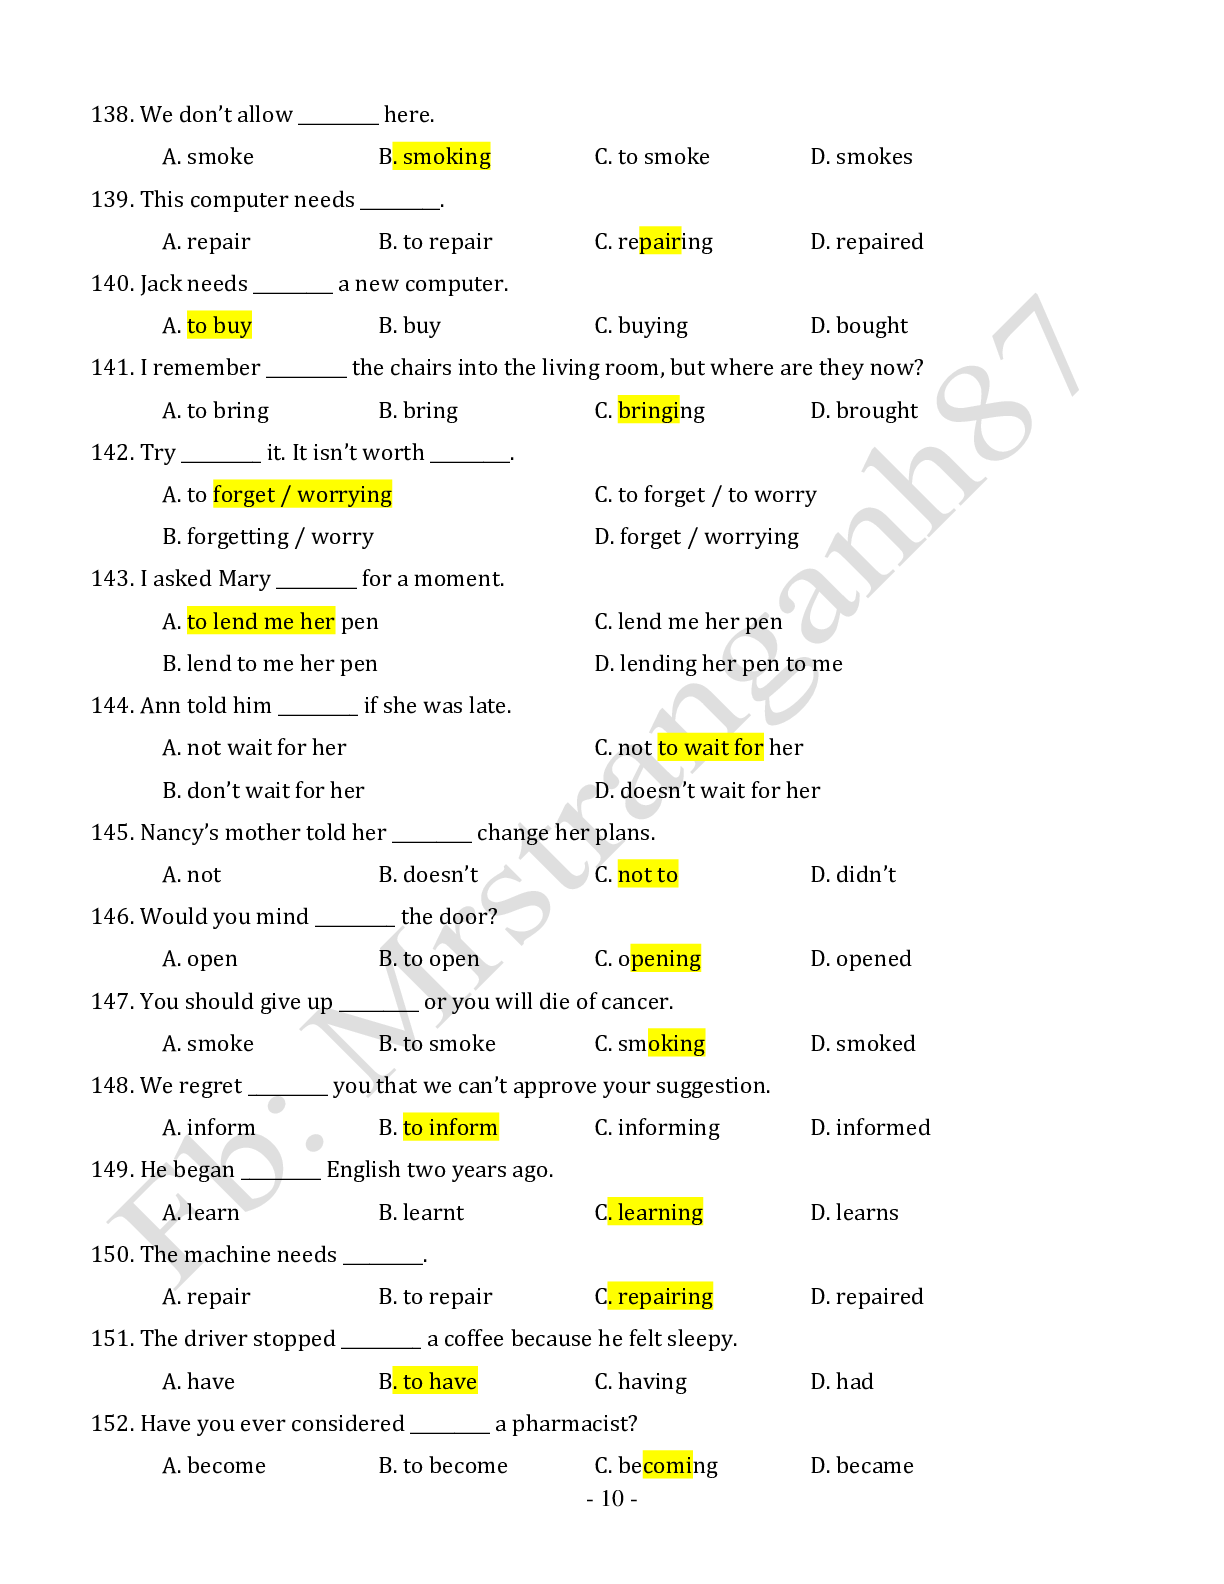 Chuyên đề: Danh động từ và động từ nguyên mẫu môn Tiếng Anh ôn thi THPTQG (trang 10)